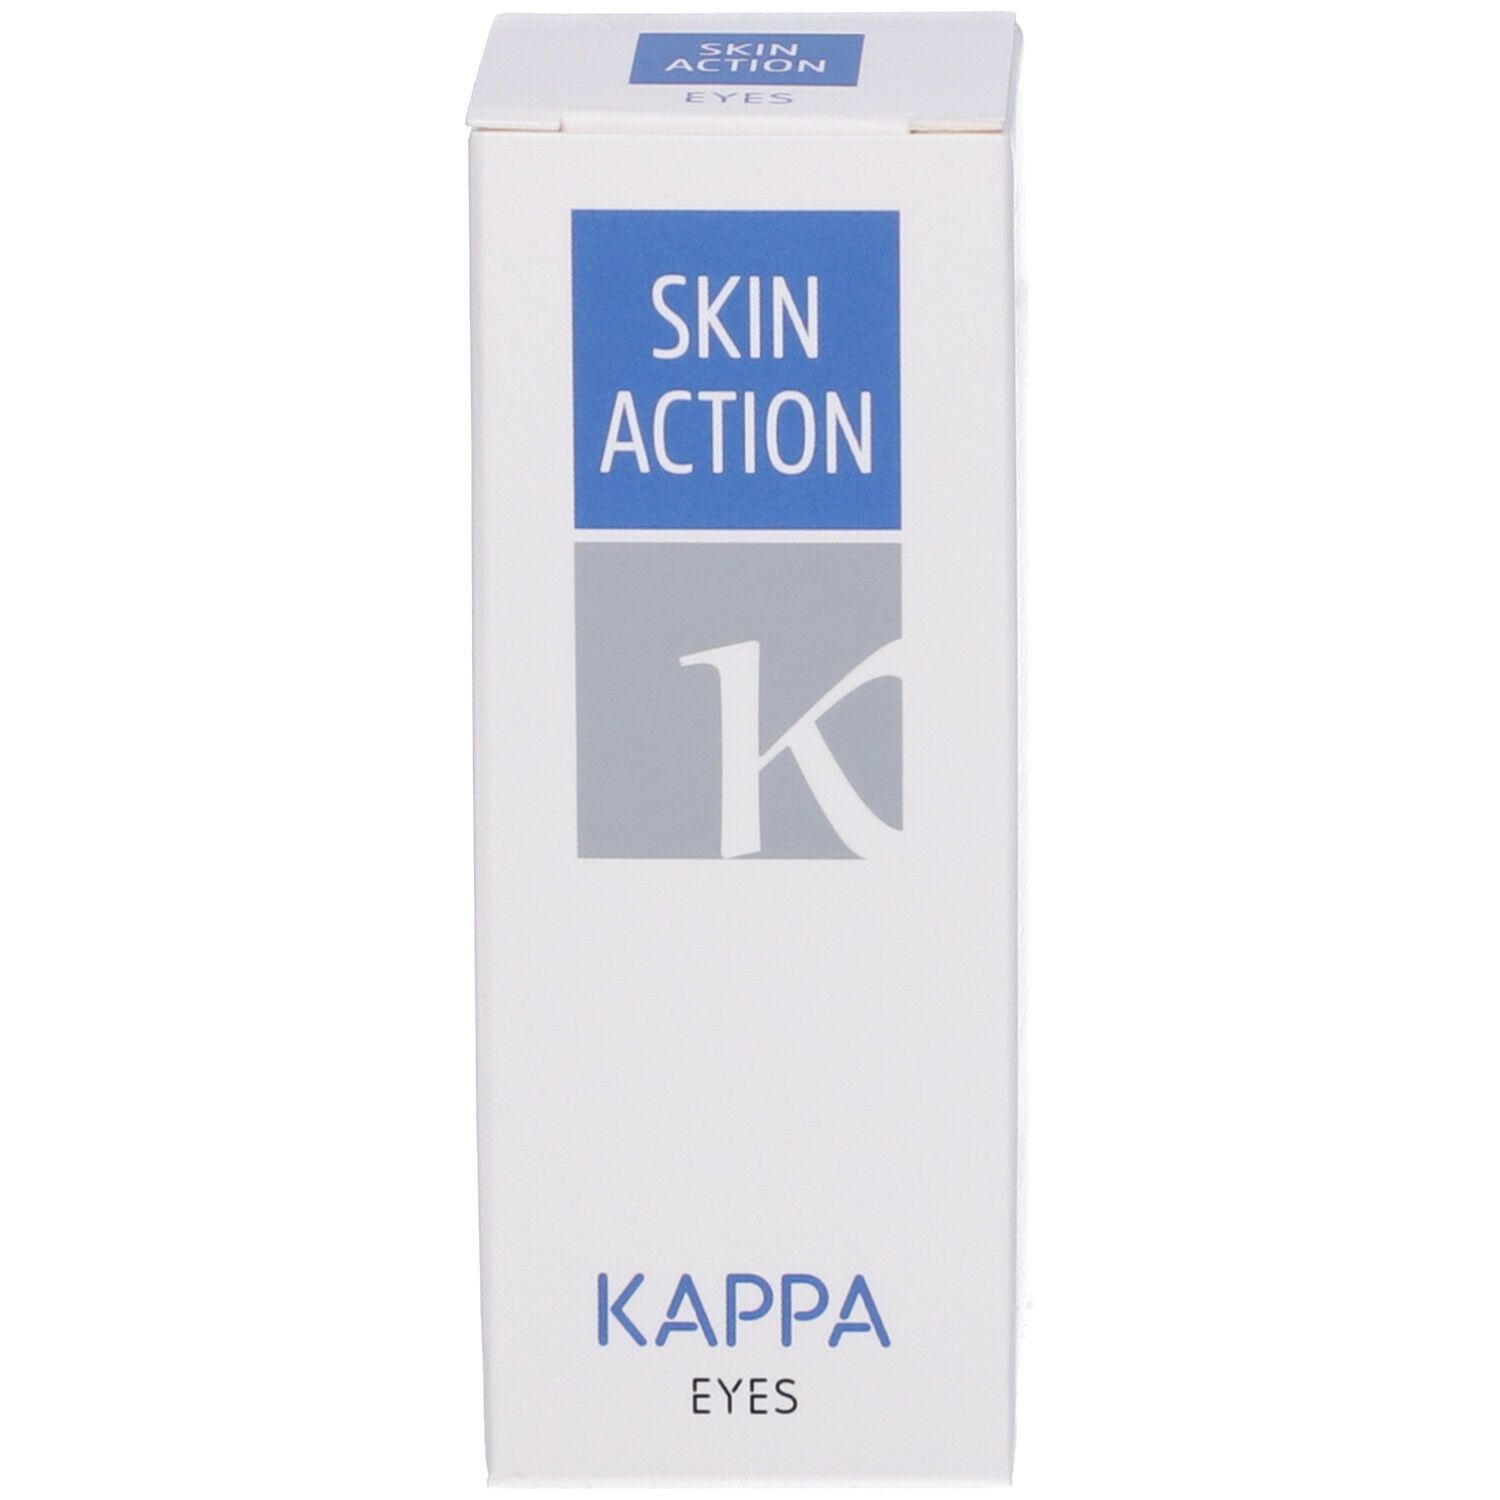 Skin Action Kappa Eyes 15Ml